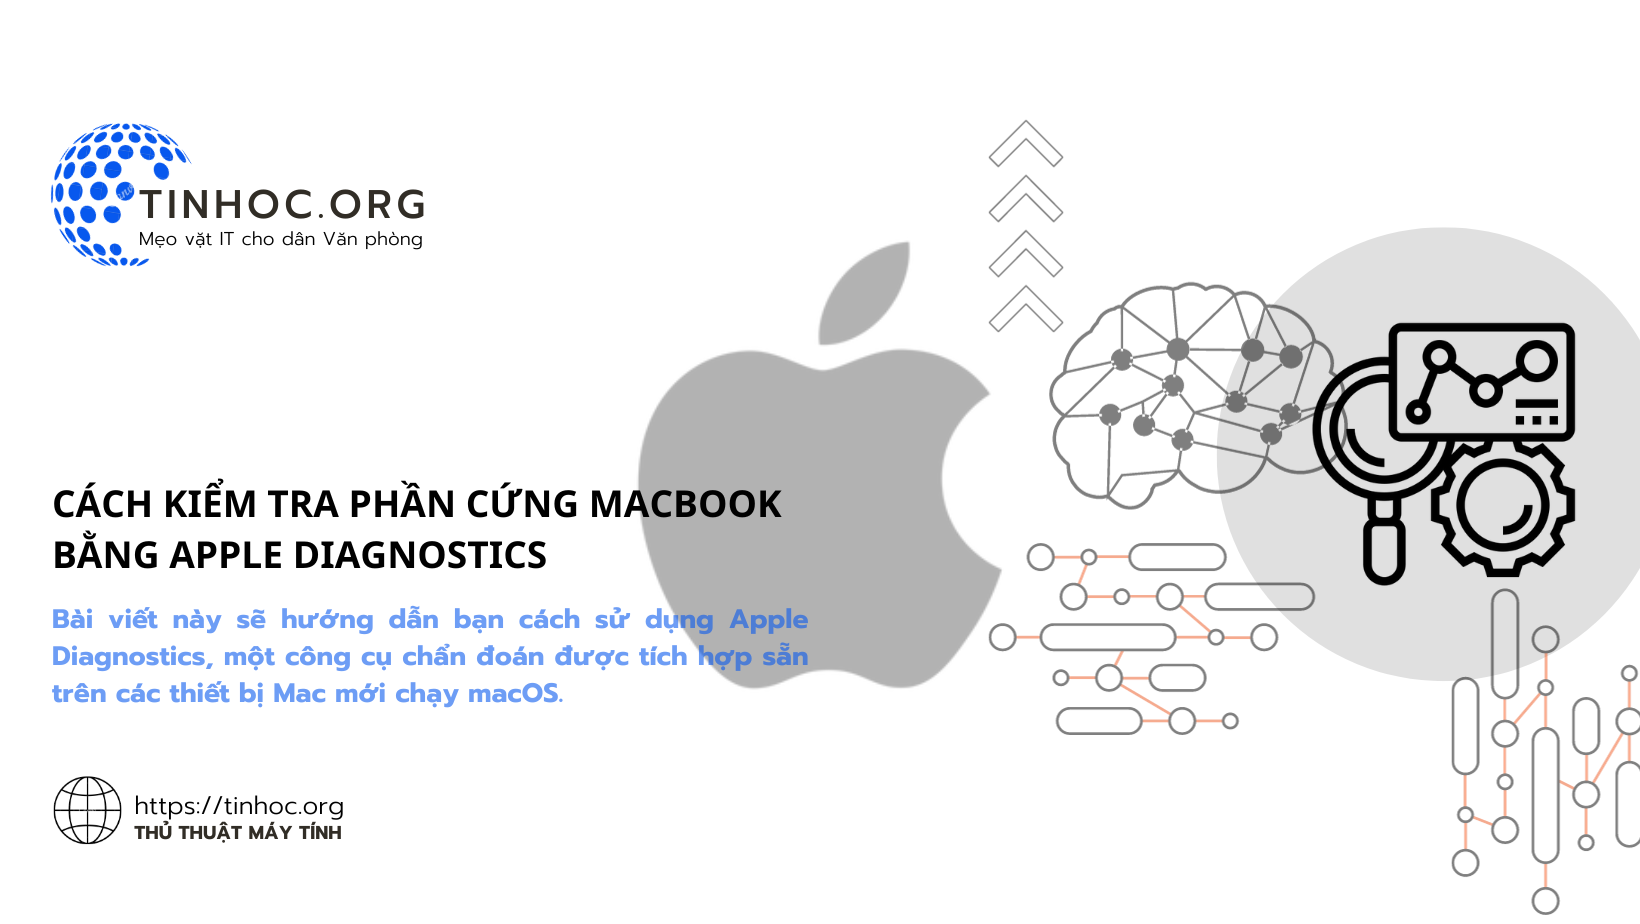 Bài viết này sẽ hướng dẫn bạn cách sử dụng Apple Diagnostics, một công cụ chẩn đoán được tích hợp sẵn trên các thiết bị Mac mới chạy macOS.